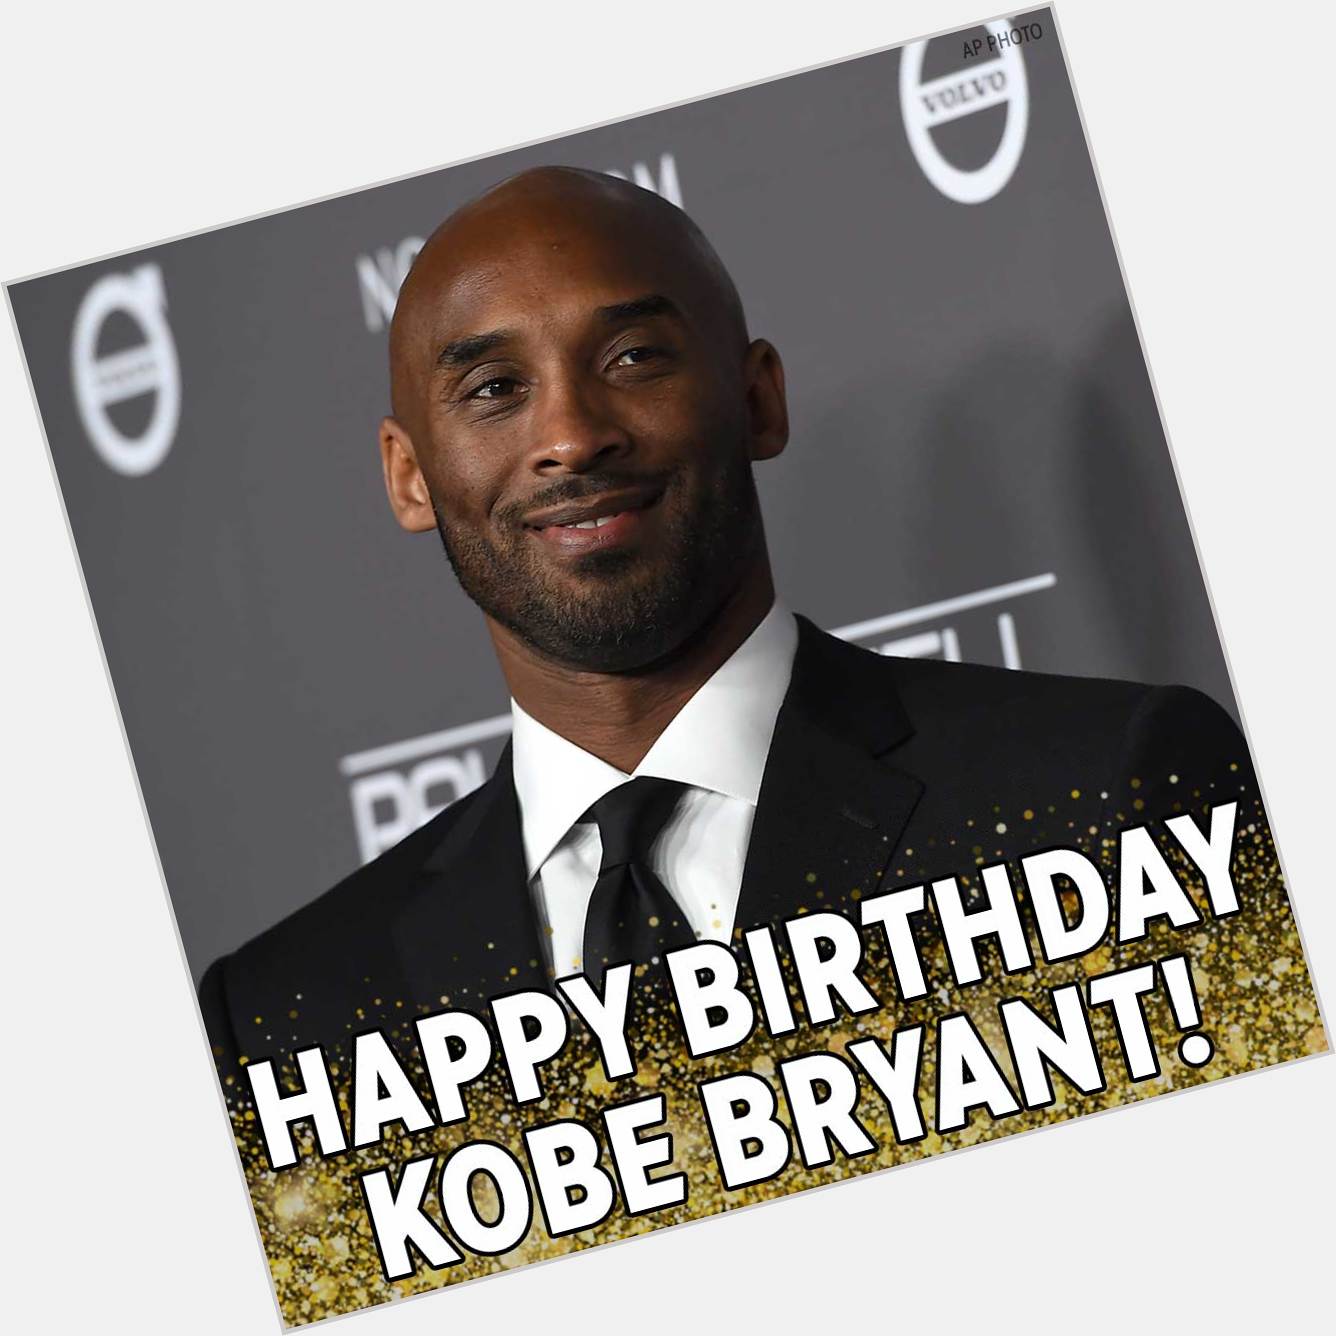 Happy birthday to NBA legend Kobe Bryant! 